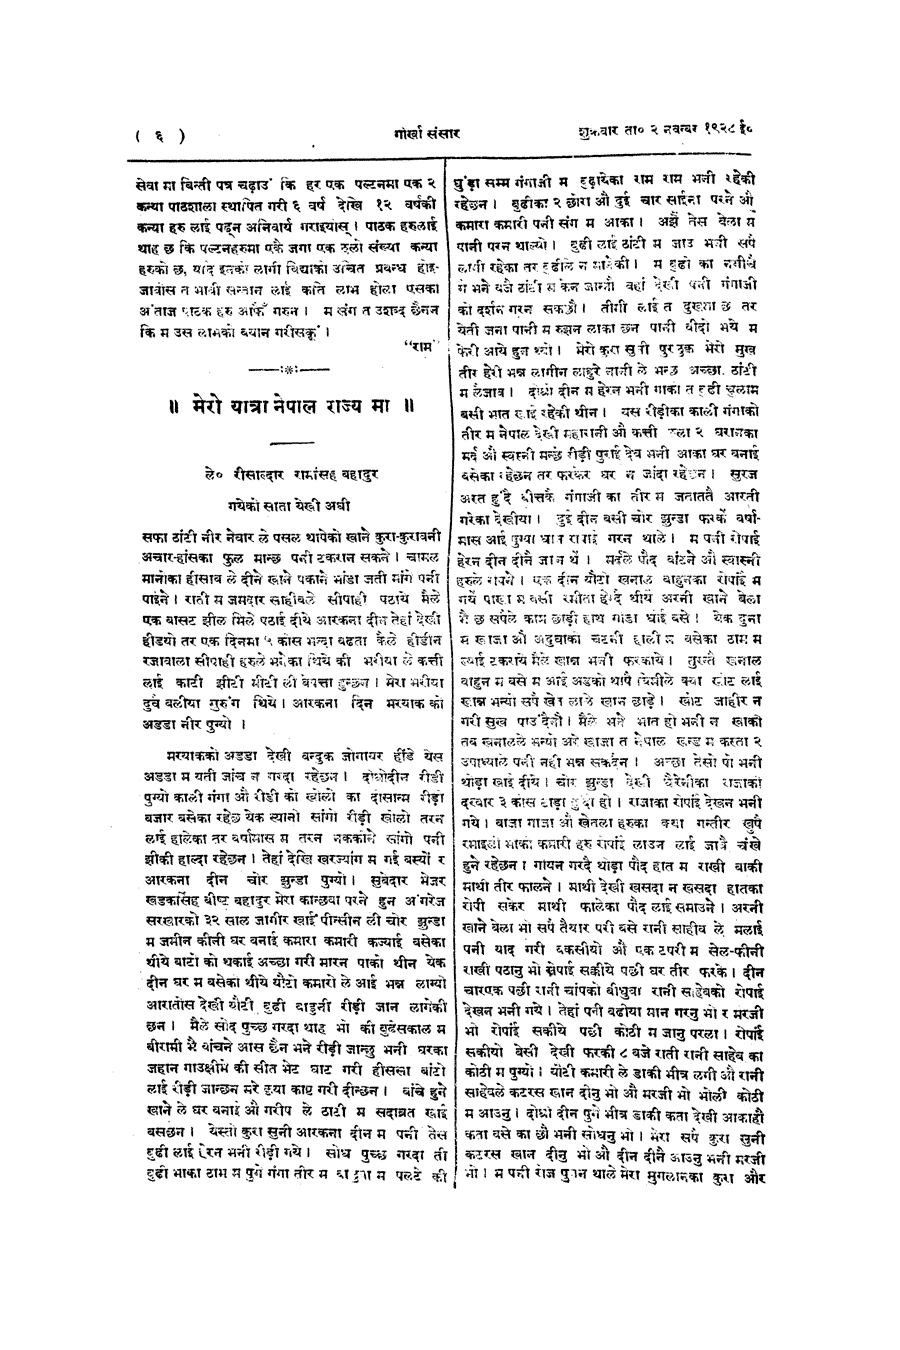 Gorkha Sansar, 2 Nov 1928, page 6